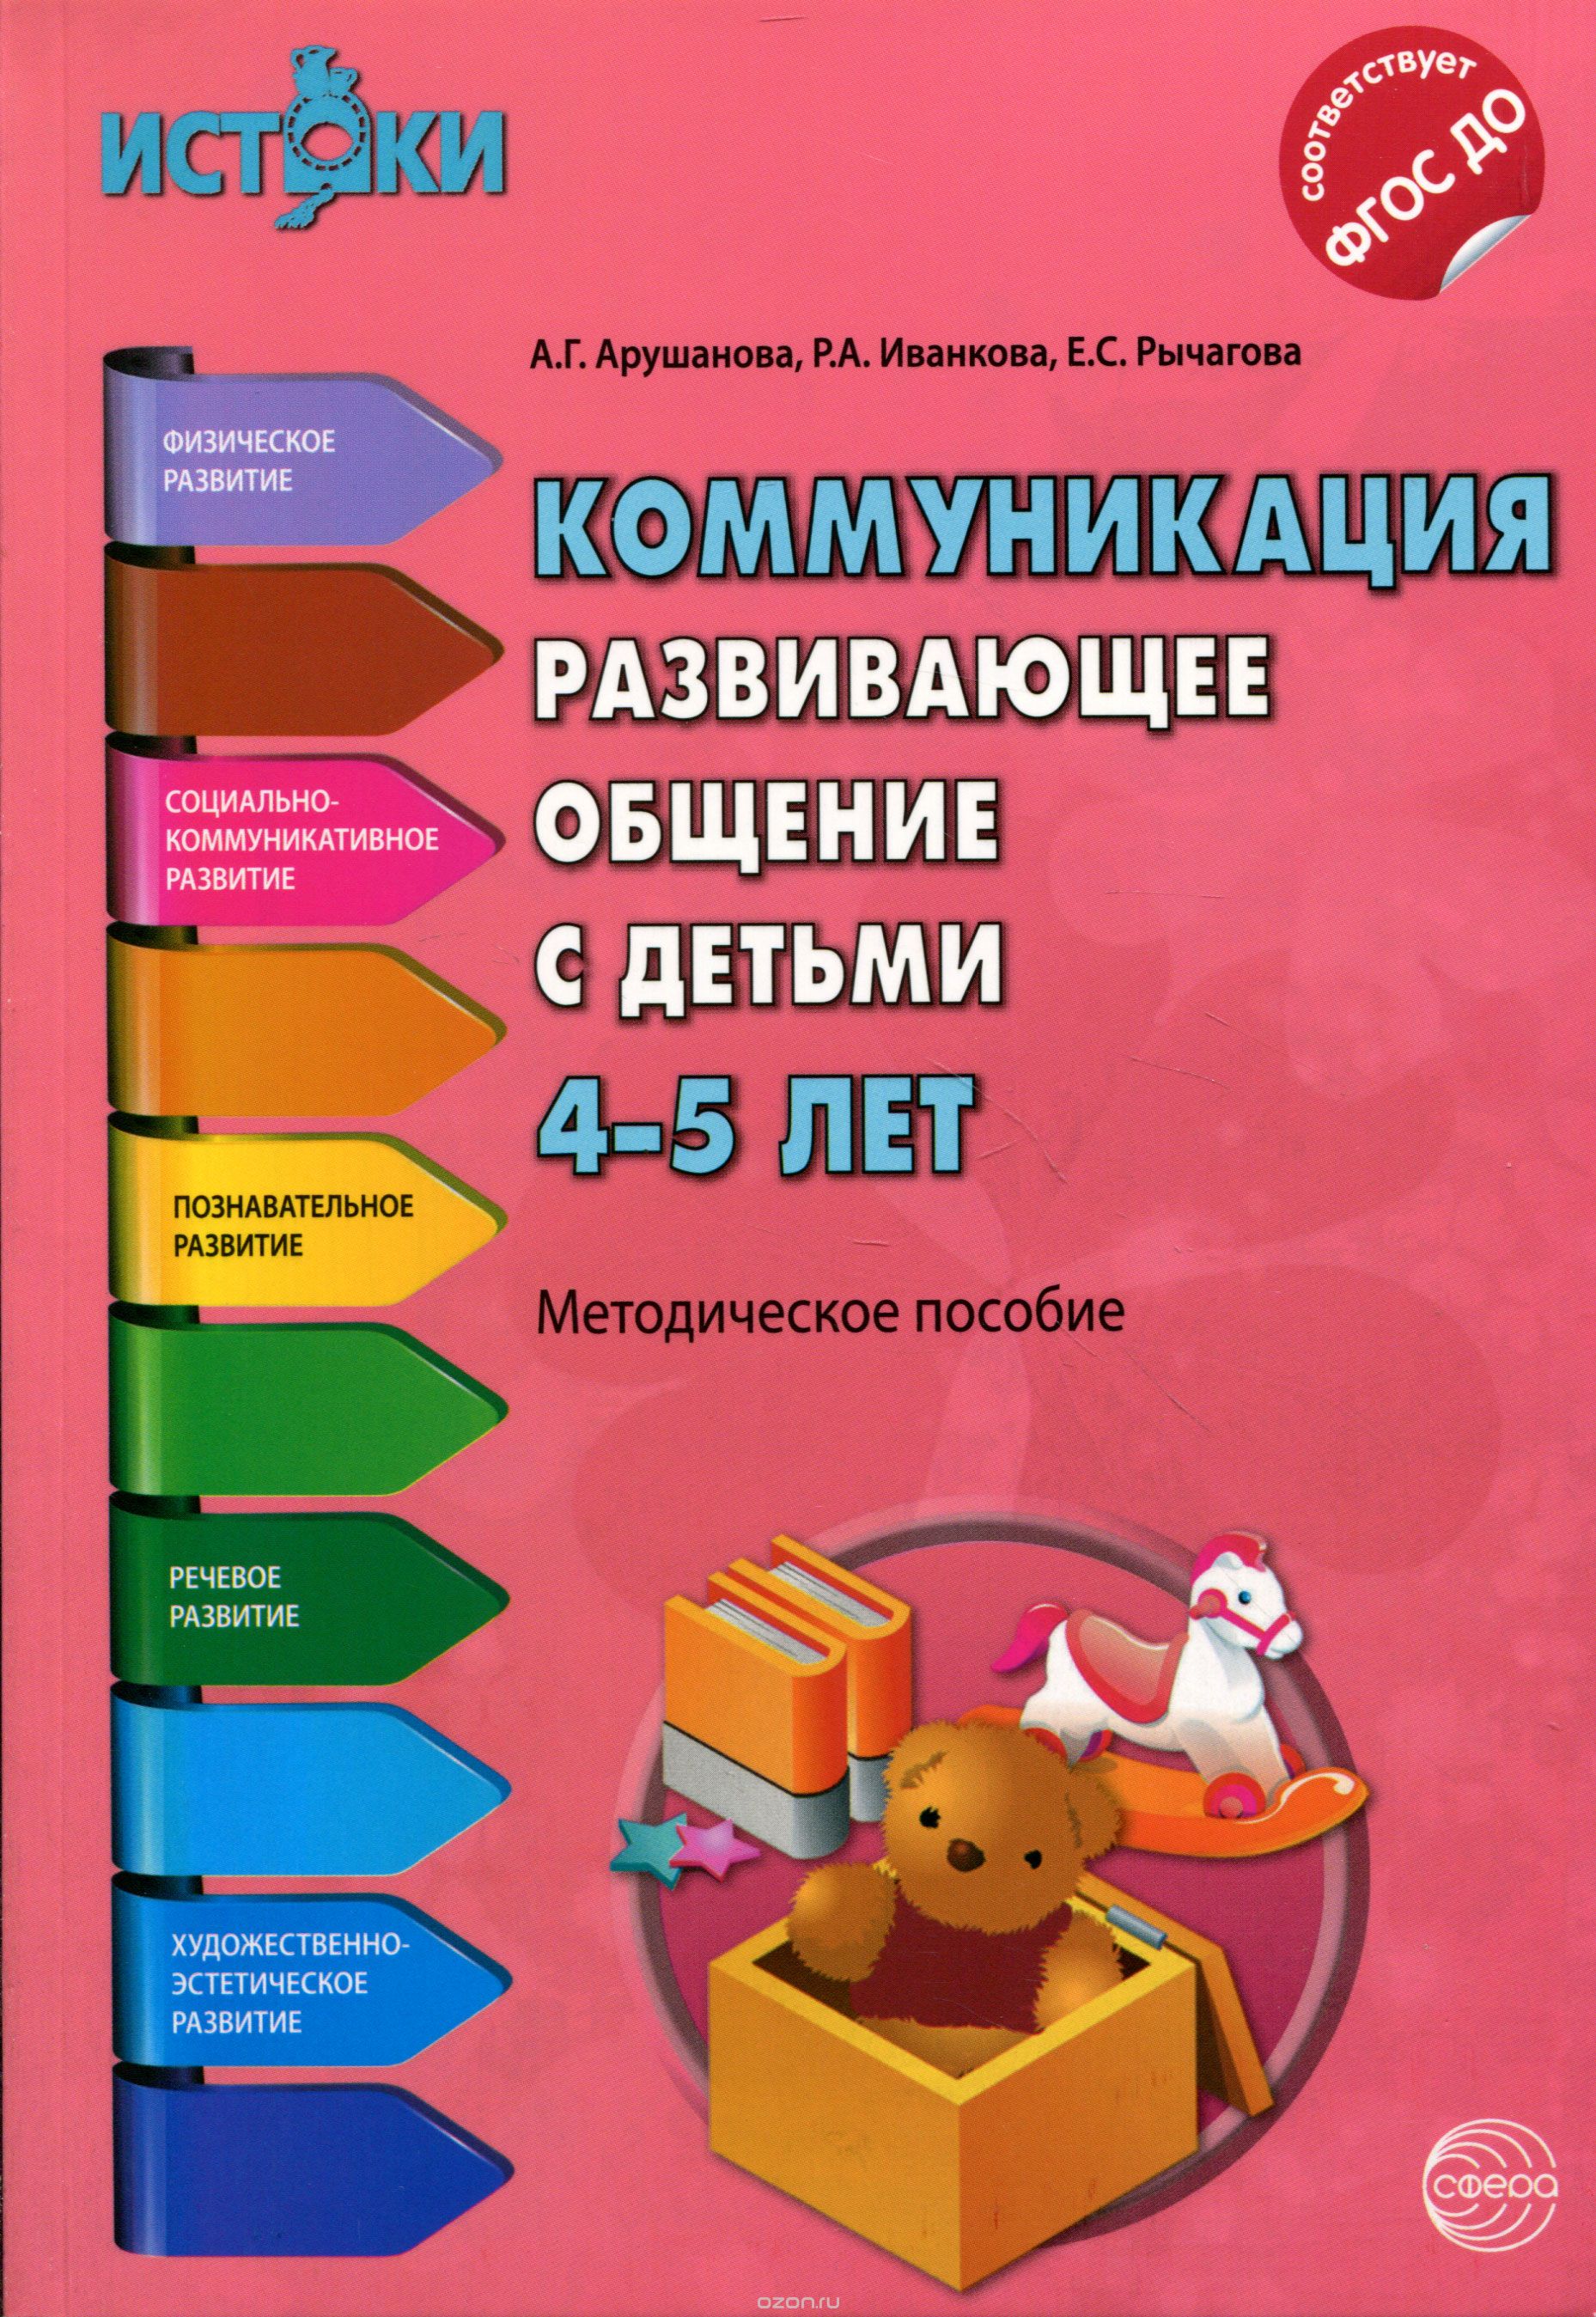 Скачать книгу "Коммуникация. Развивающее общение с детьми 4-5 лет, А. Г. Арушанова, Р. А. Иванкова, Е. С. Рычагова"